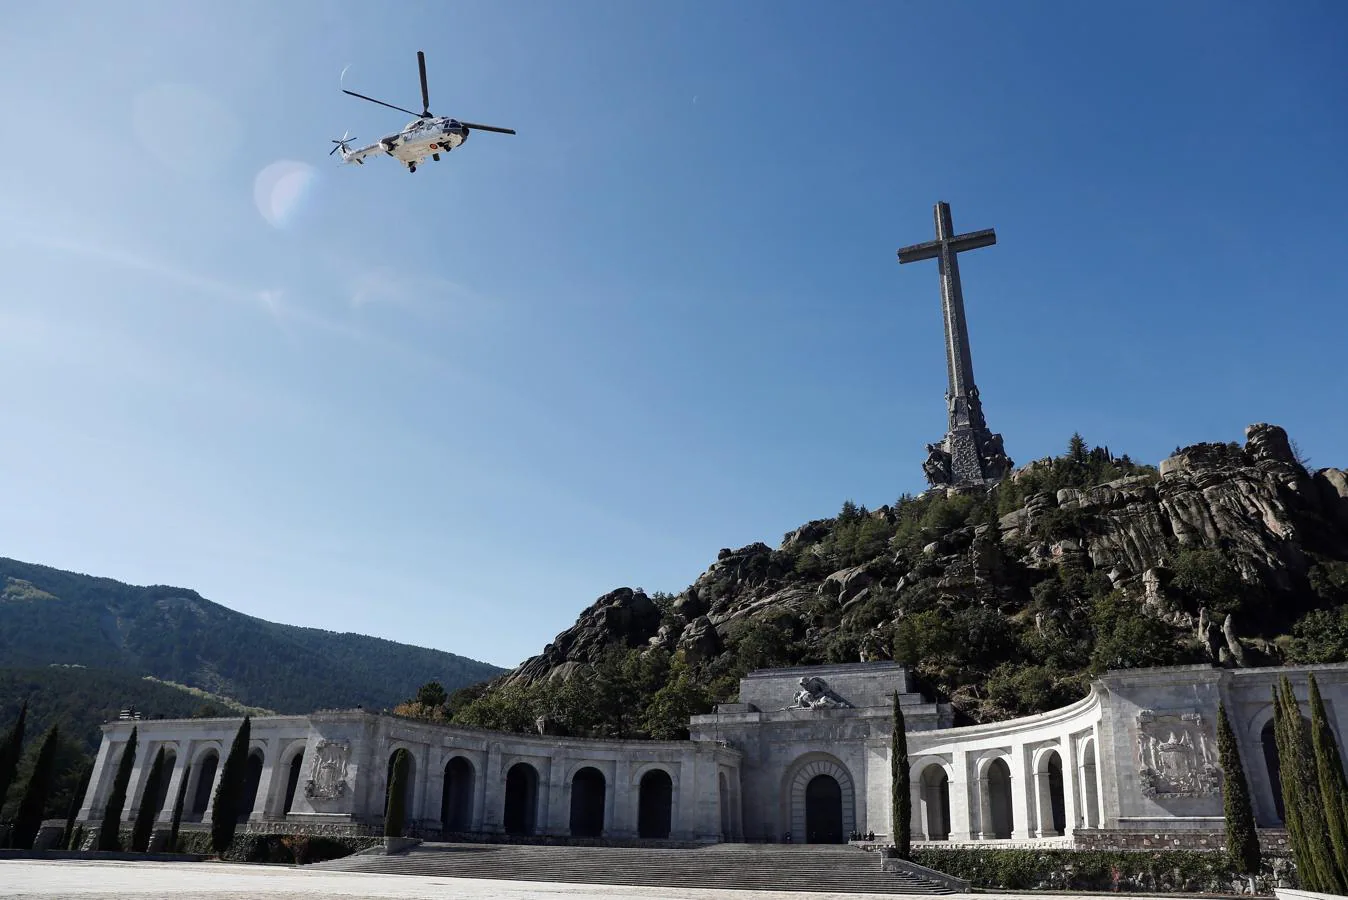 Vista del helicóptero que traslada los restos de Francisco Franco tras su exhumación del Valle de los Caídos camino del cementerio de El Pardo-Mingorrubio para su reinhumación.. 